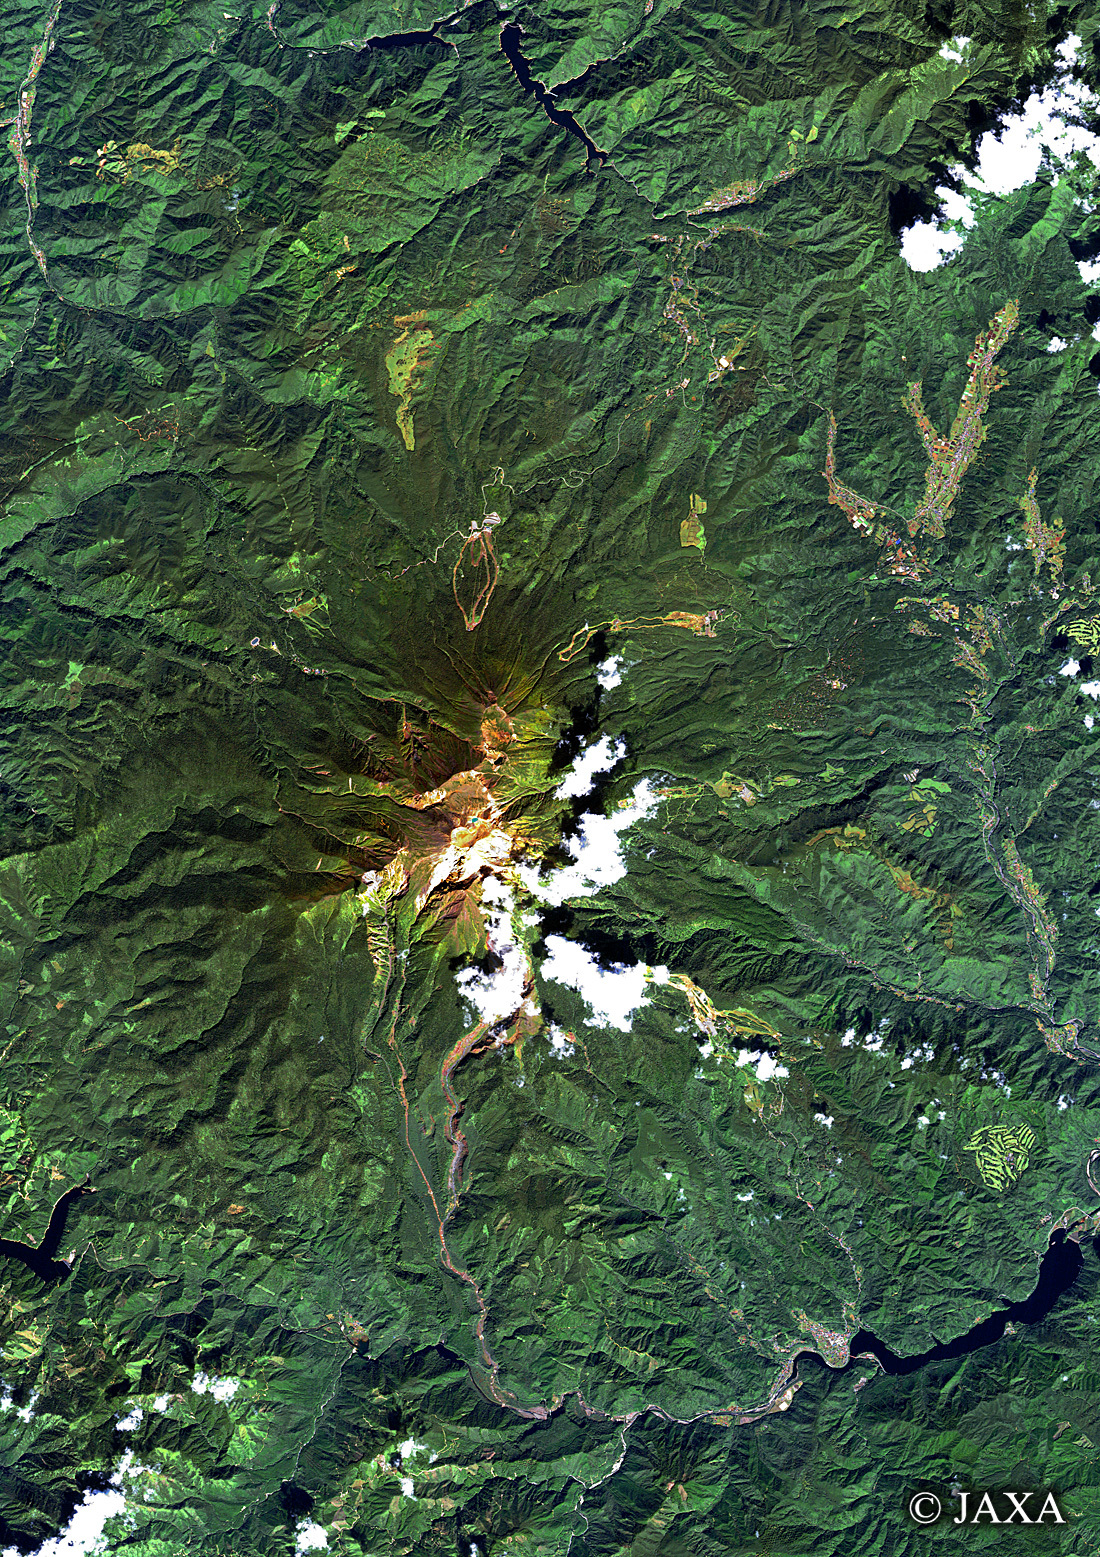 だいちから見た日本の都市 御嶽山:衛星画像